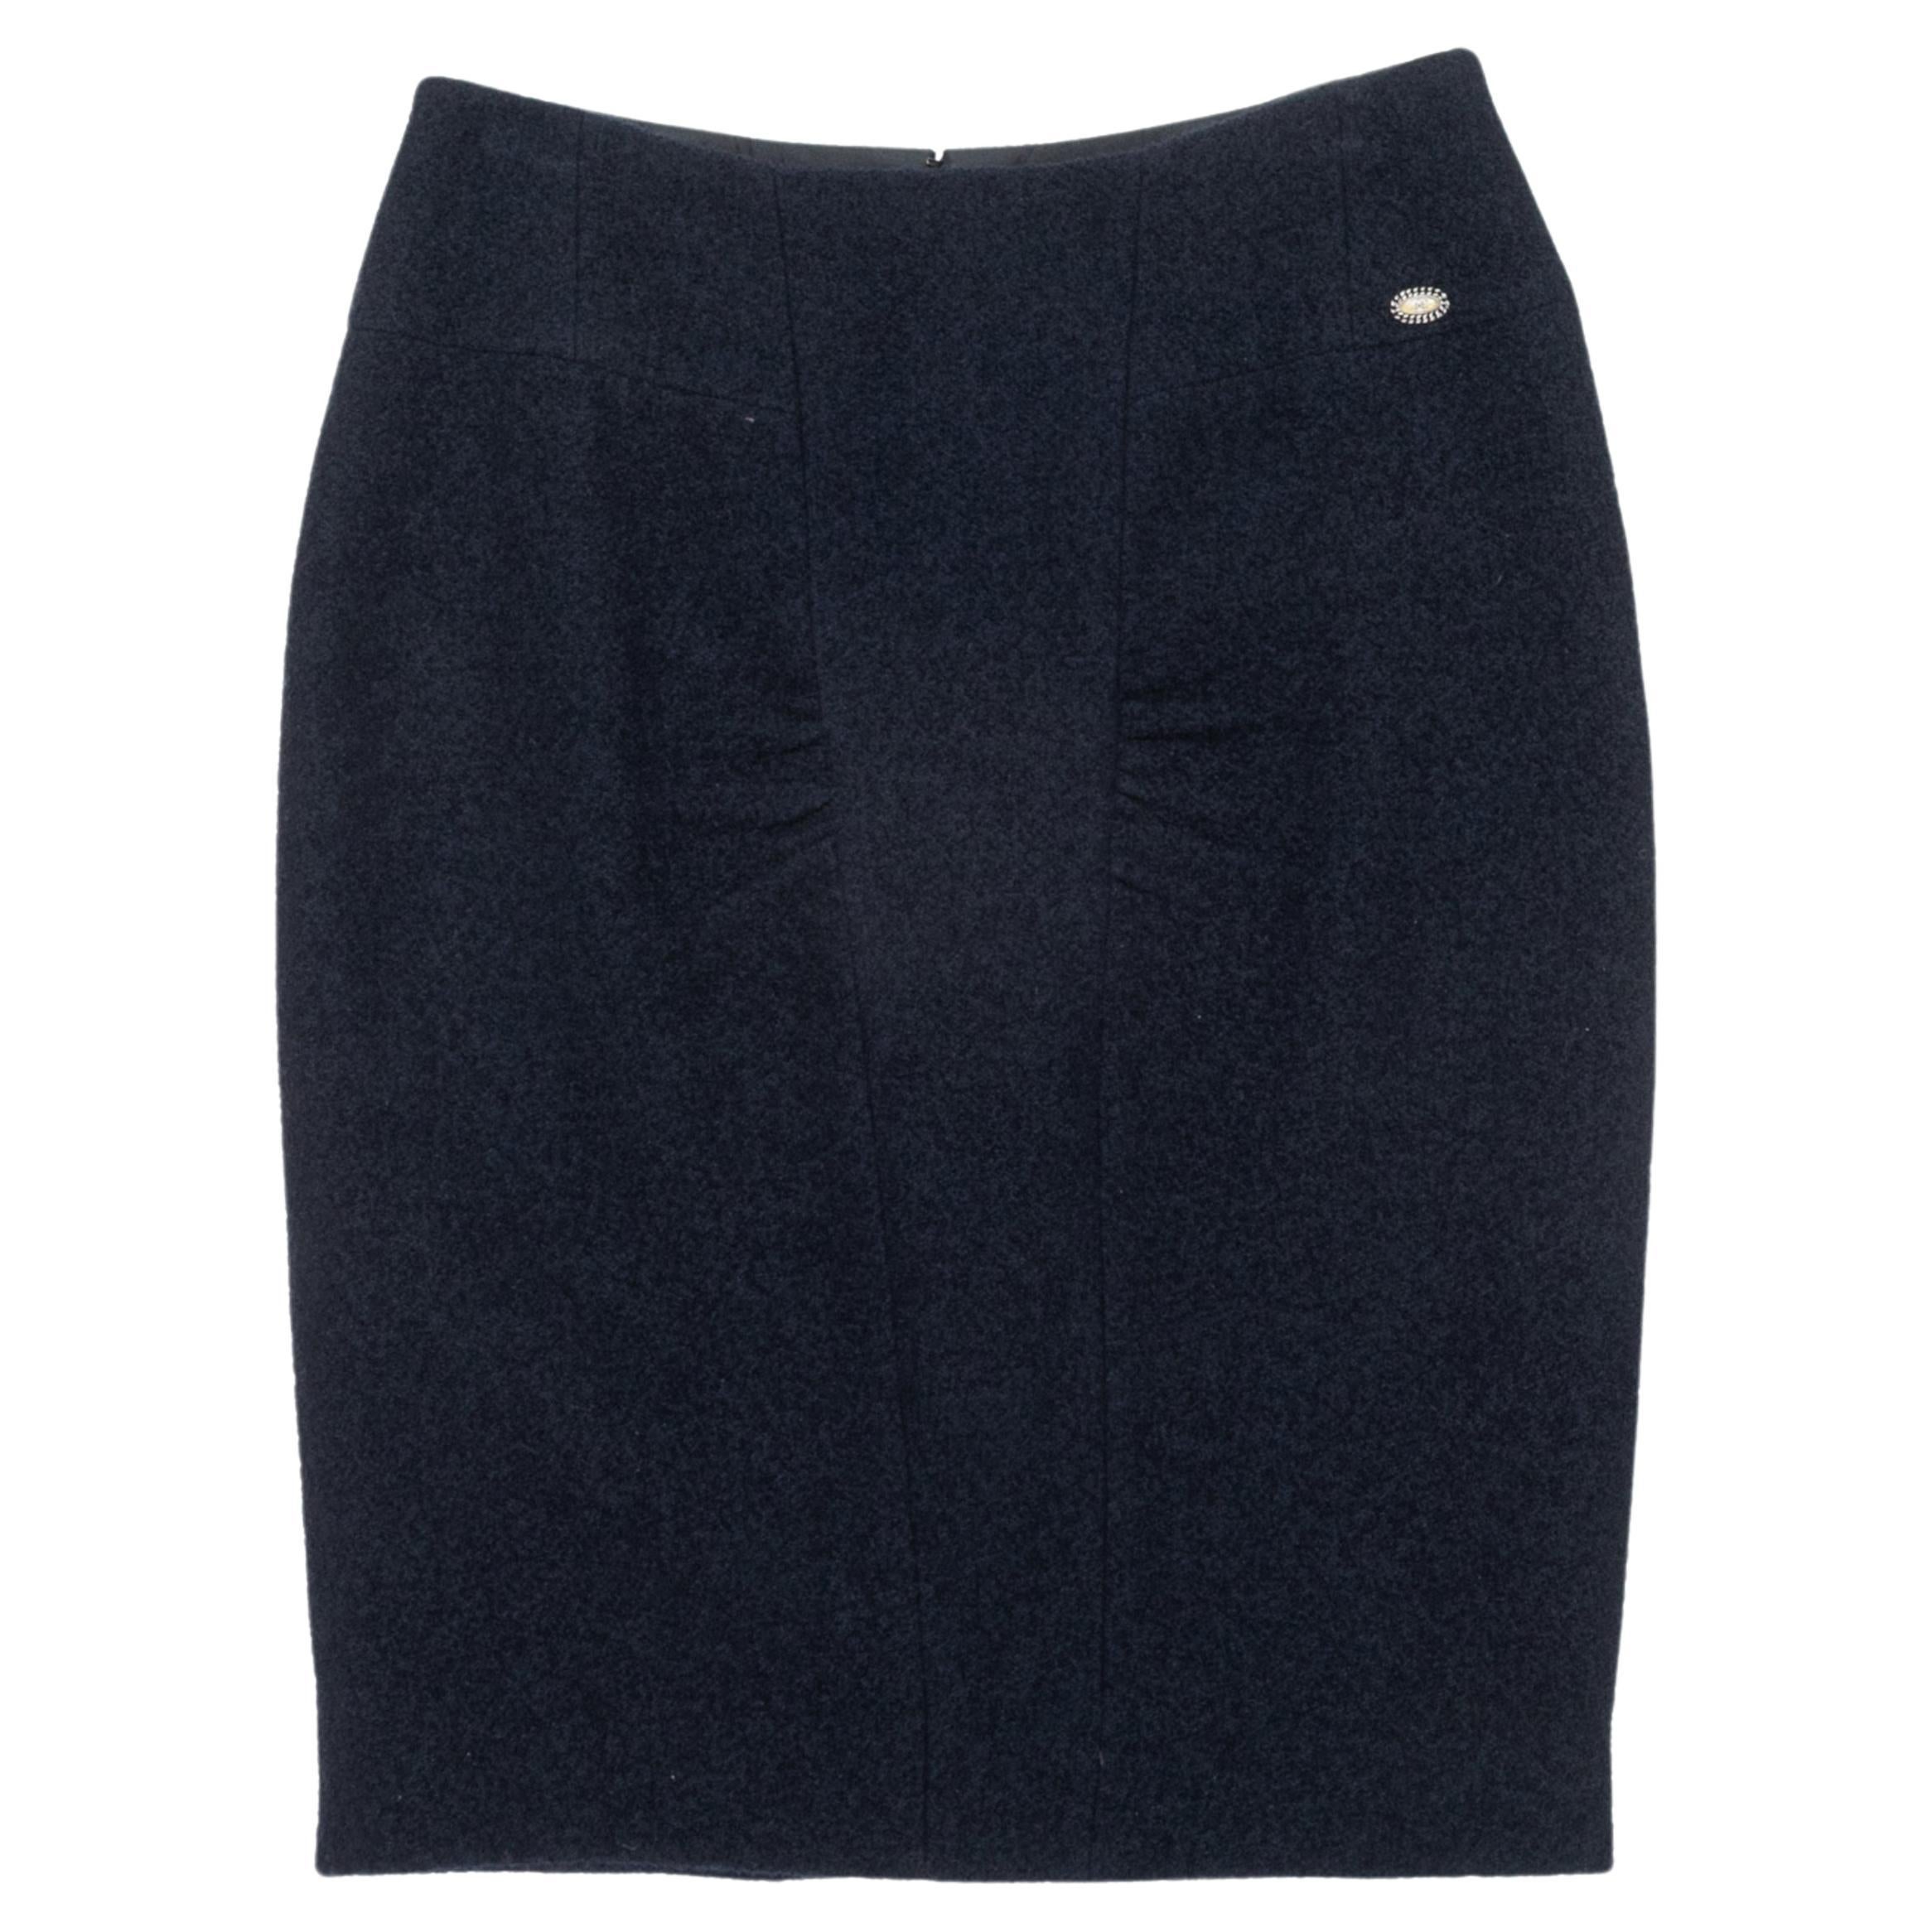 Navy Chanel Fall/Winter 2008 Wool Pencil Skirt Size EU 36